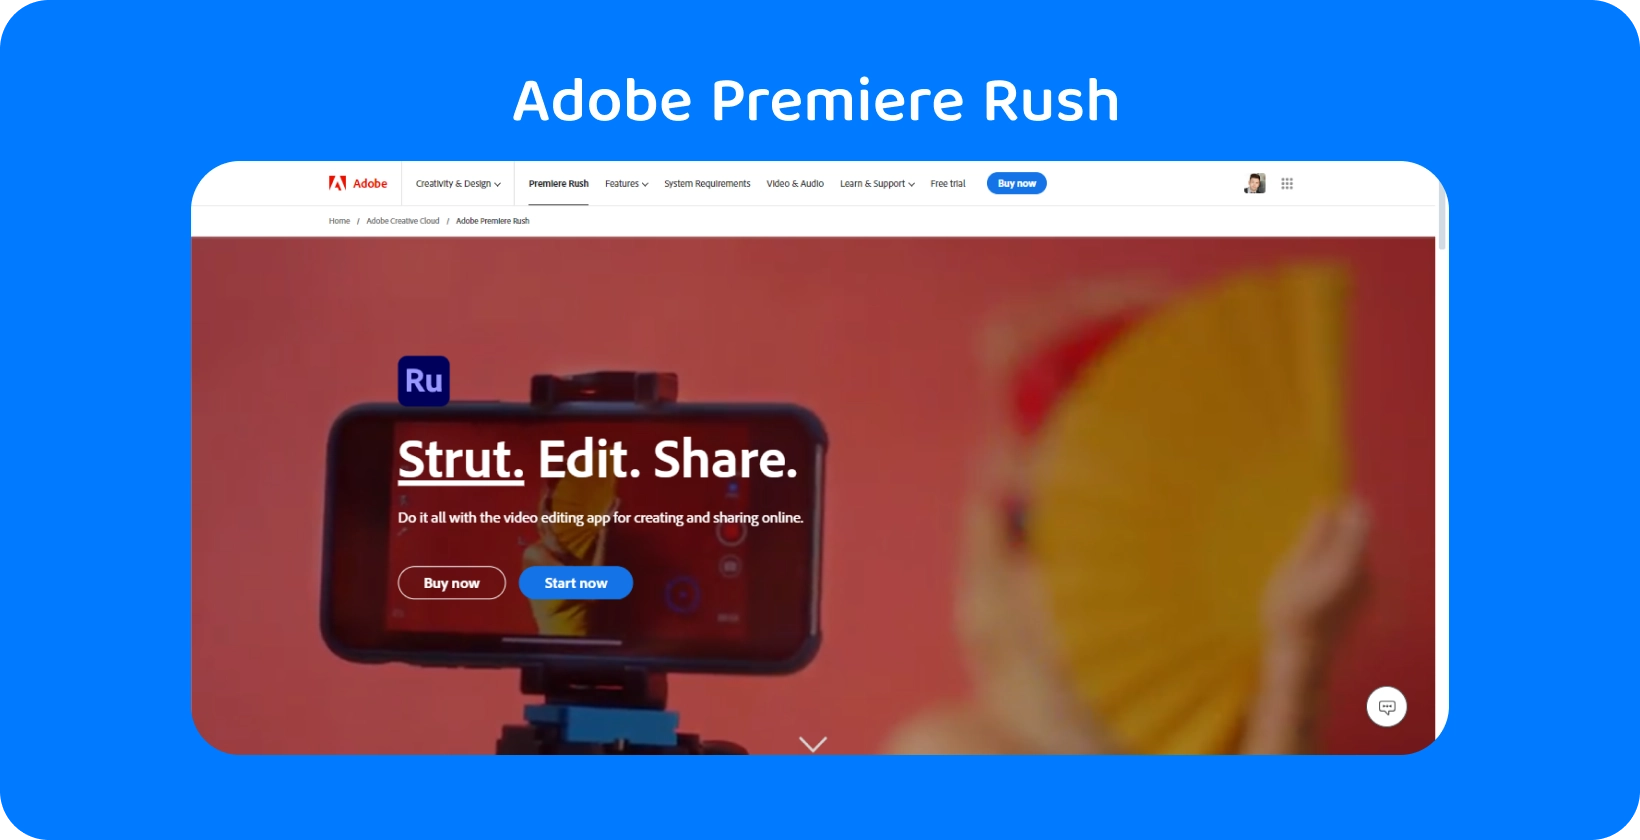 Adobe Premiere Rush auf einem auf einem Stativ montierten Smartphone mit dem Slogan "Strut. Edit. Share." für die Videobearbeitung.